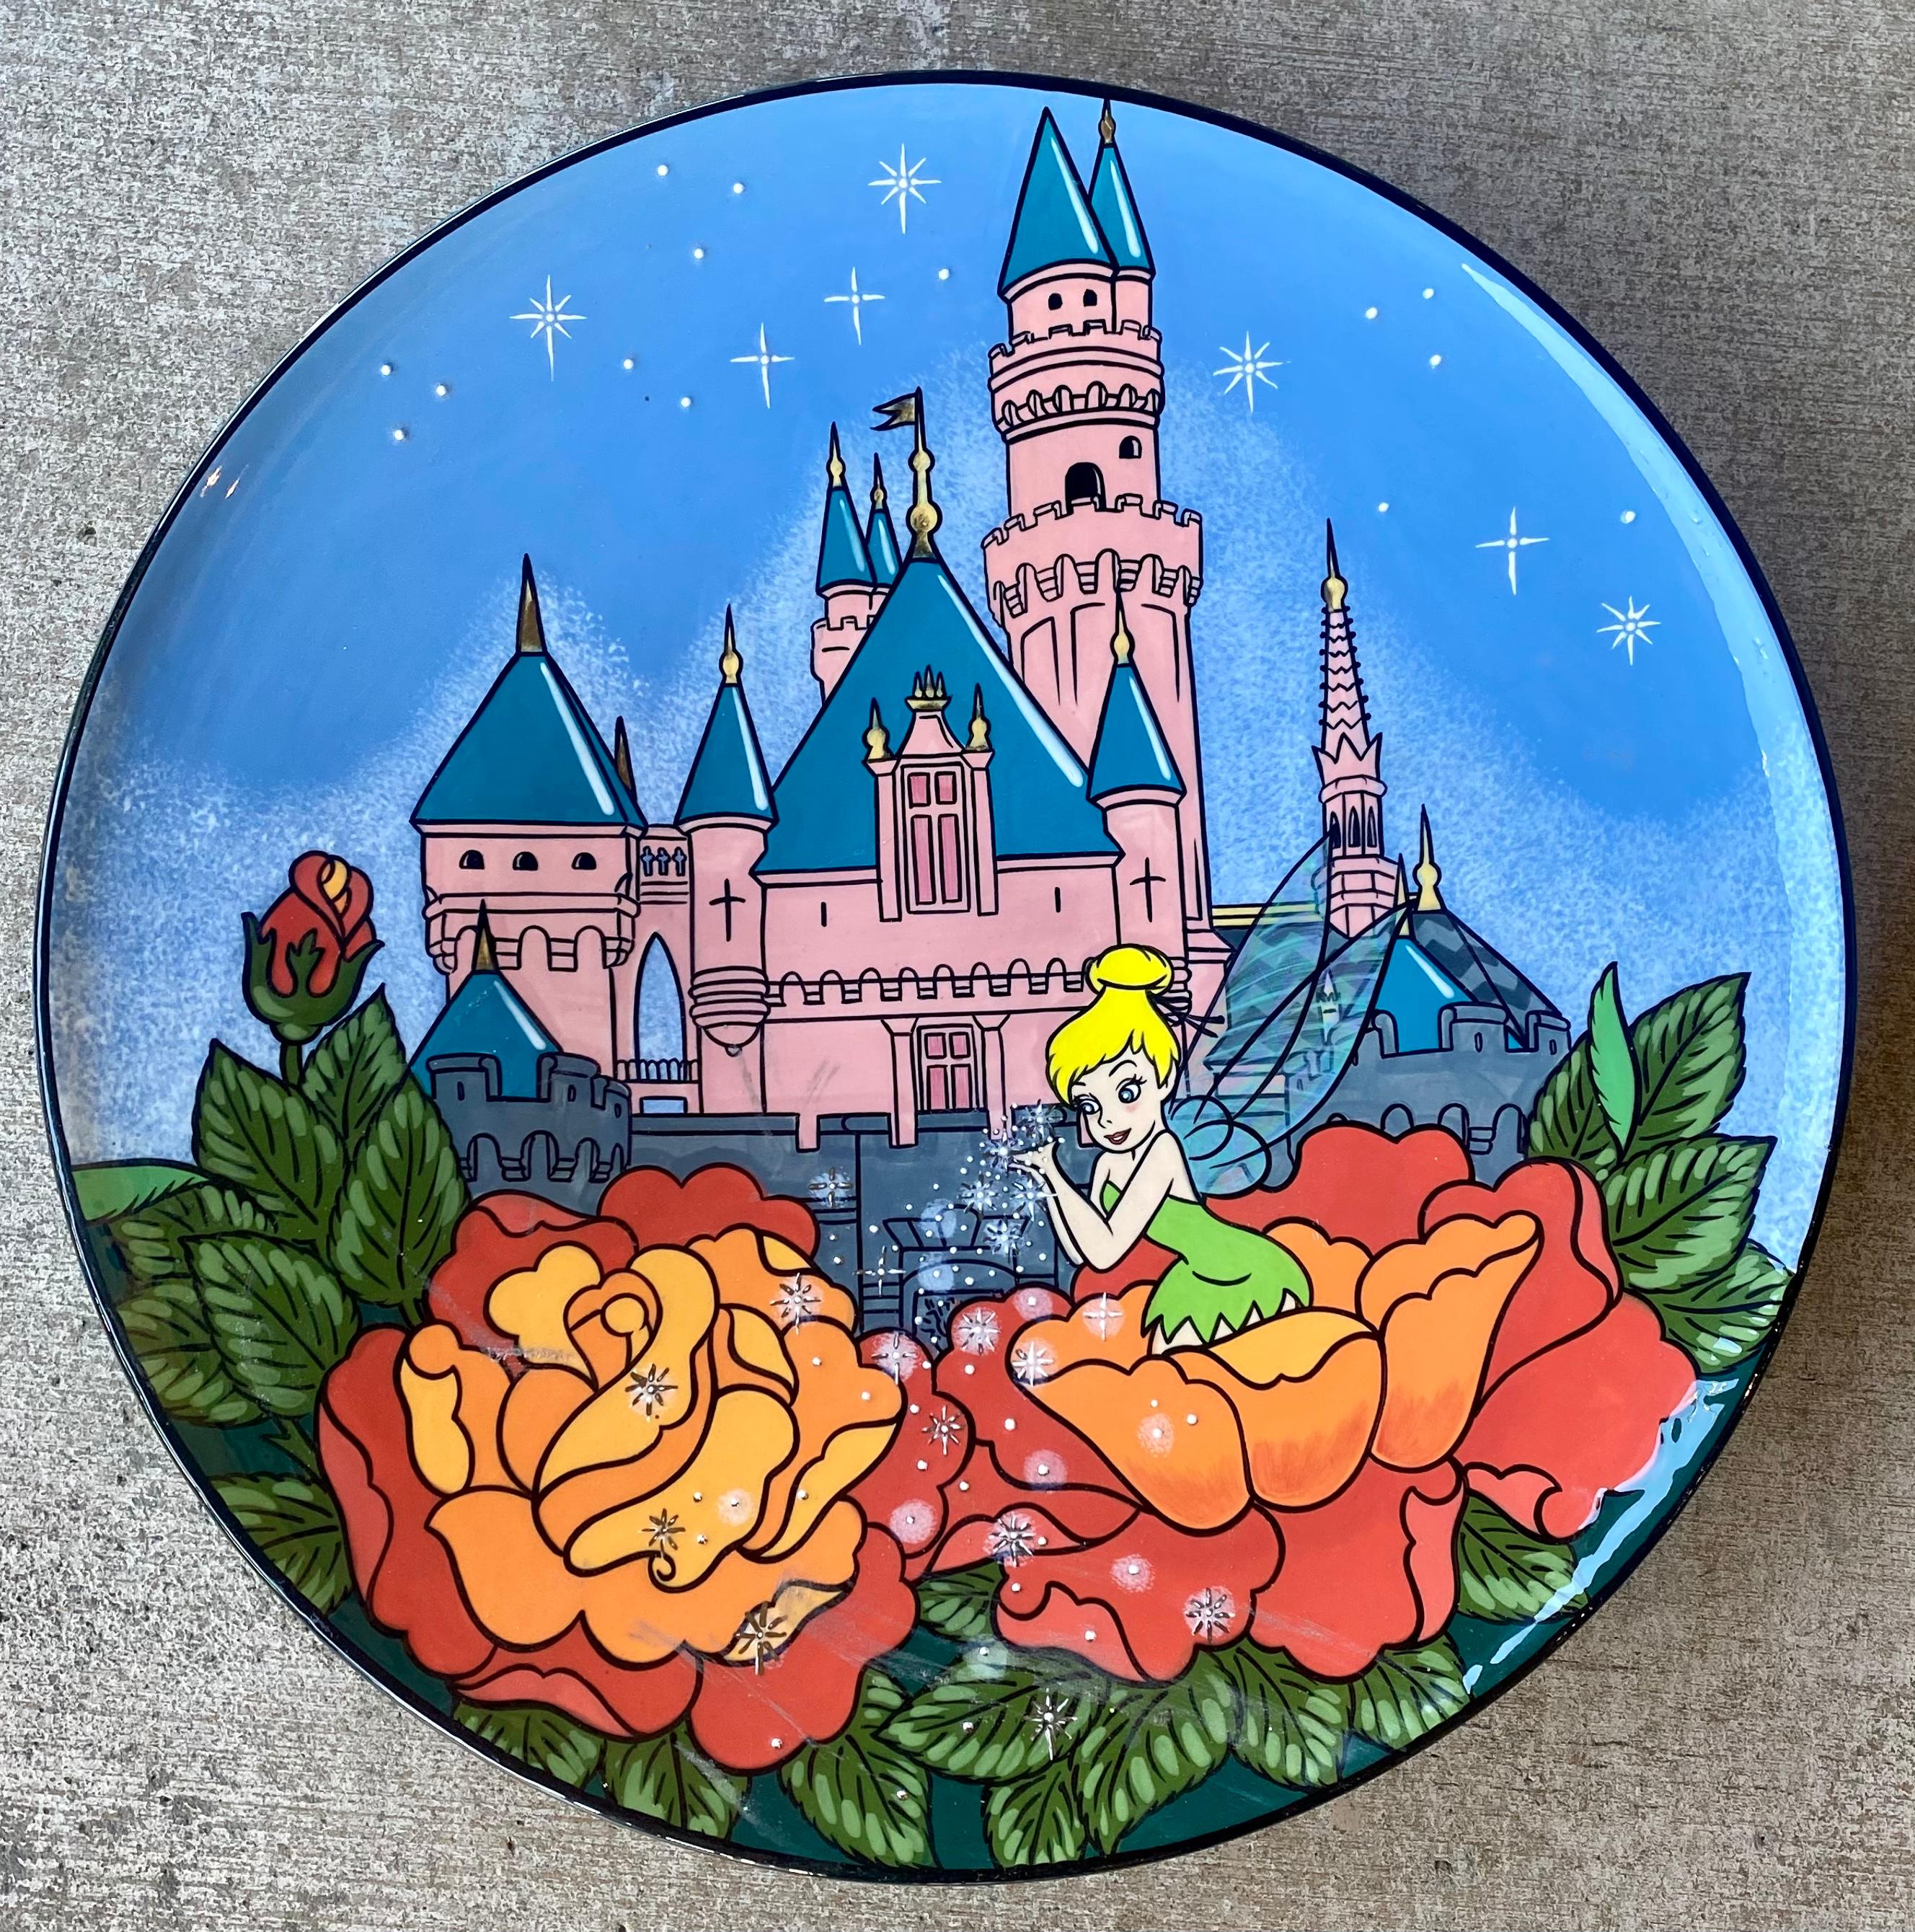 Sammelbare große, handgefertigte Tinker Bell und das Disneyland Magic Kingdom Schloss Original-Kunstteller von Disney-Künstler, Elisabete Gomes. Der Keramikteller zeigt eine handgemalte Szene des berühmten Schlosses Magic Kingdom und Tinkerbell, die